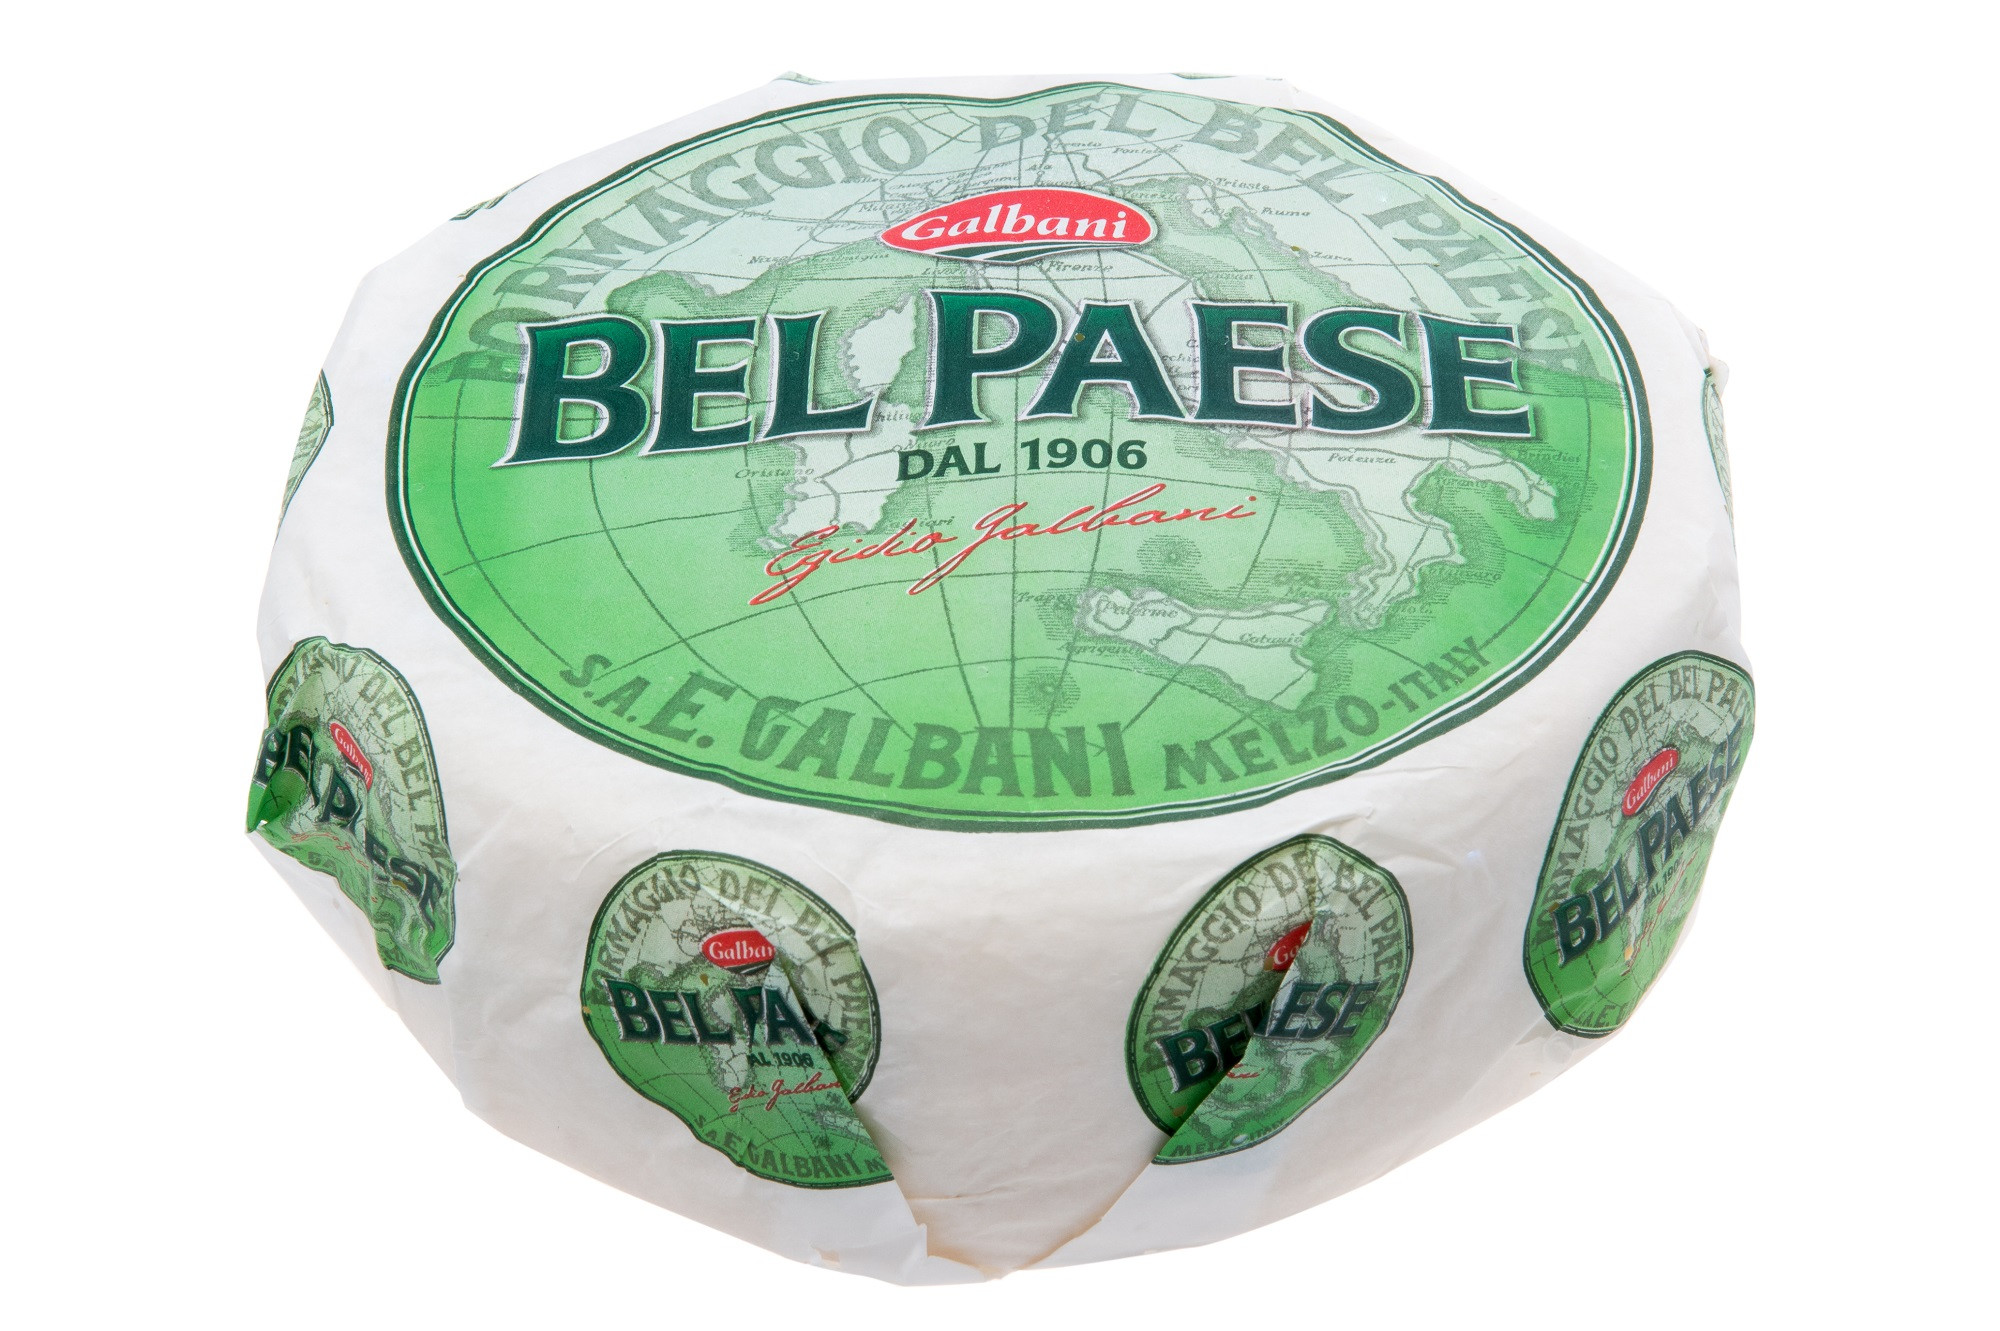 Fromage Bel Paese 2.55kg Galbani